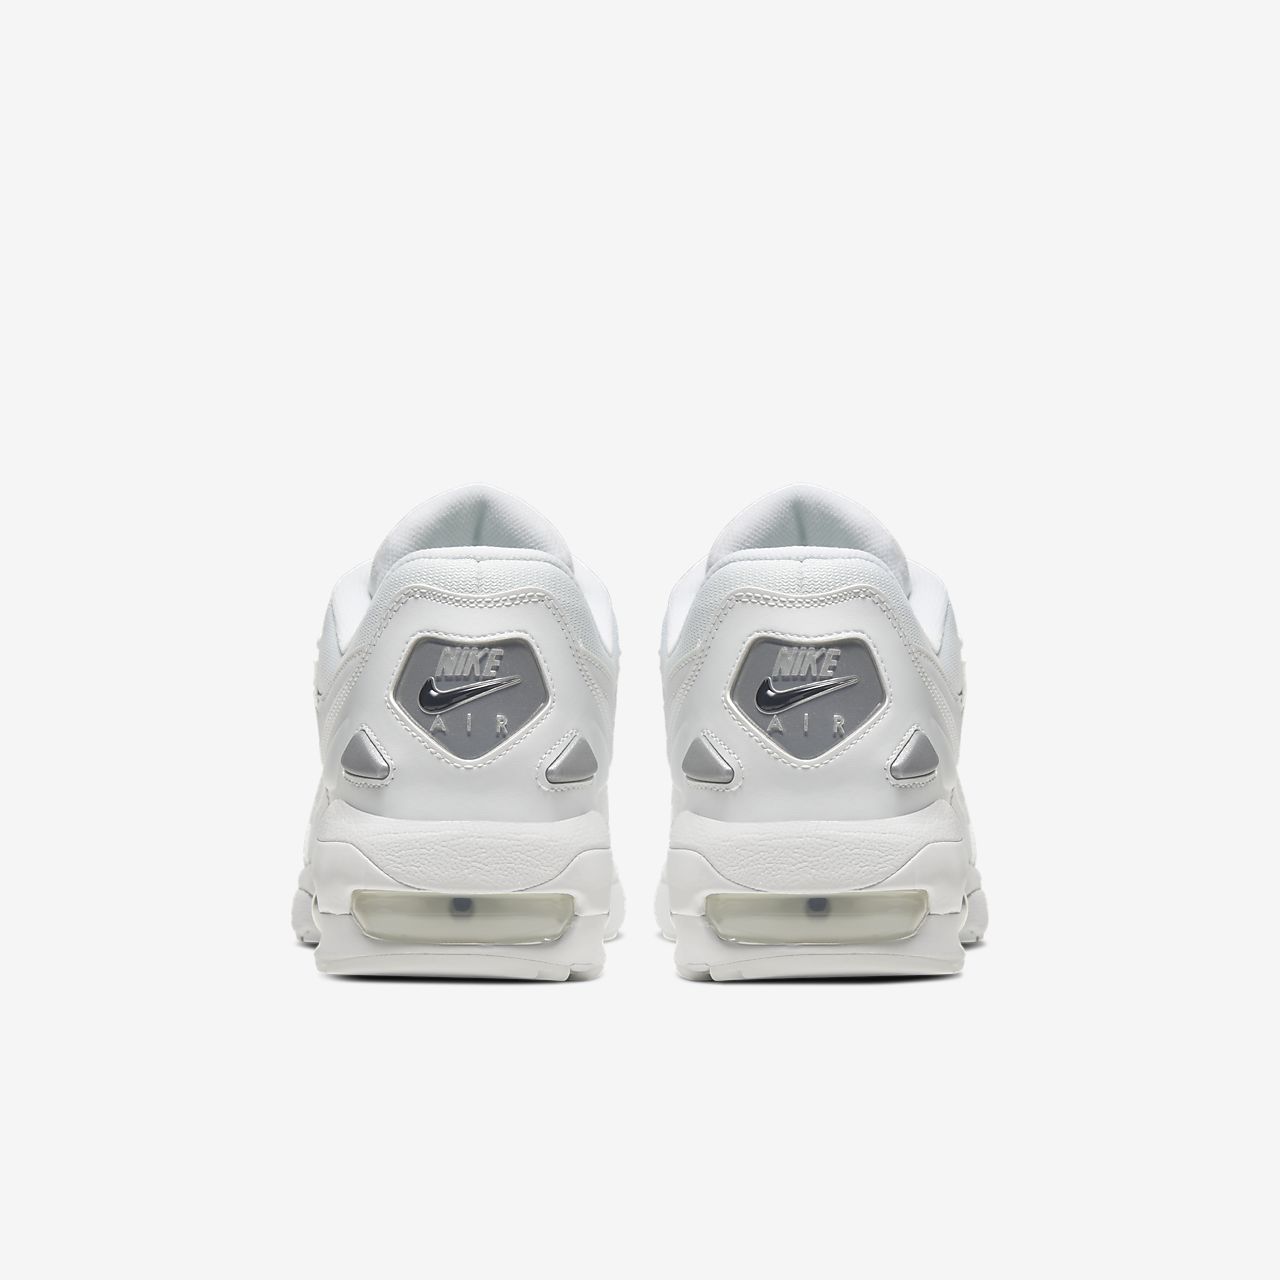 Nike Air Max2 Light - Sneakers - Hvide | DK-59822